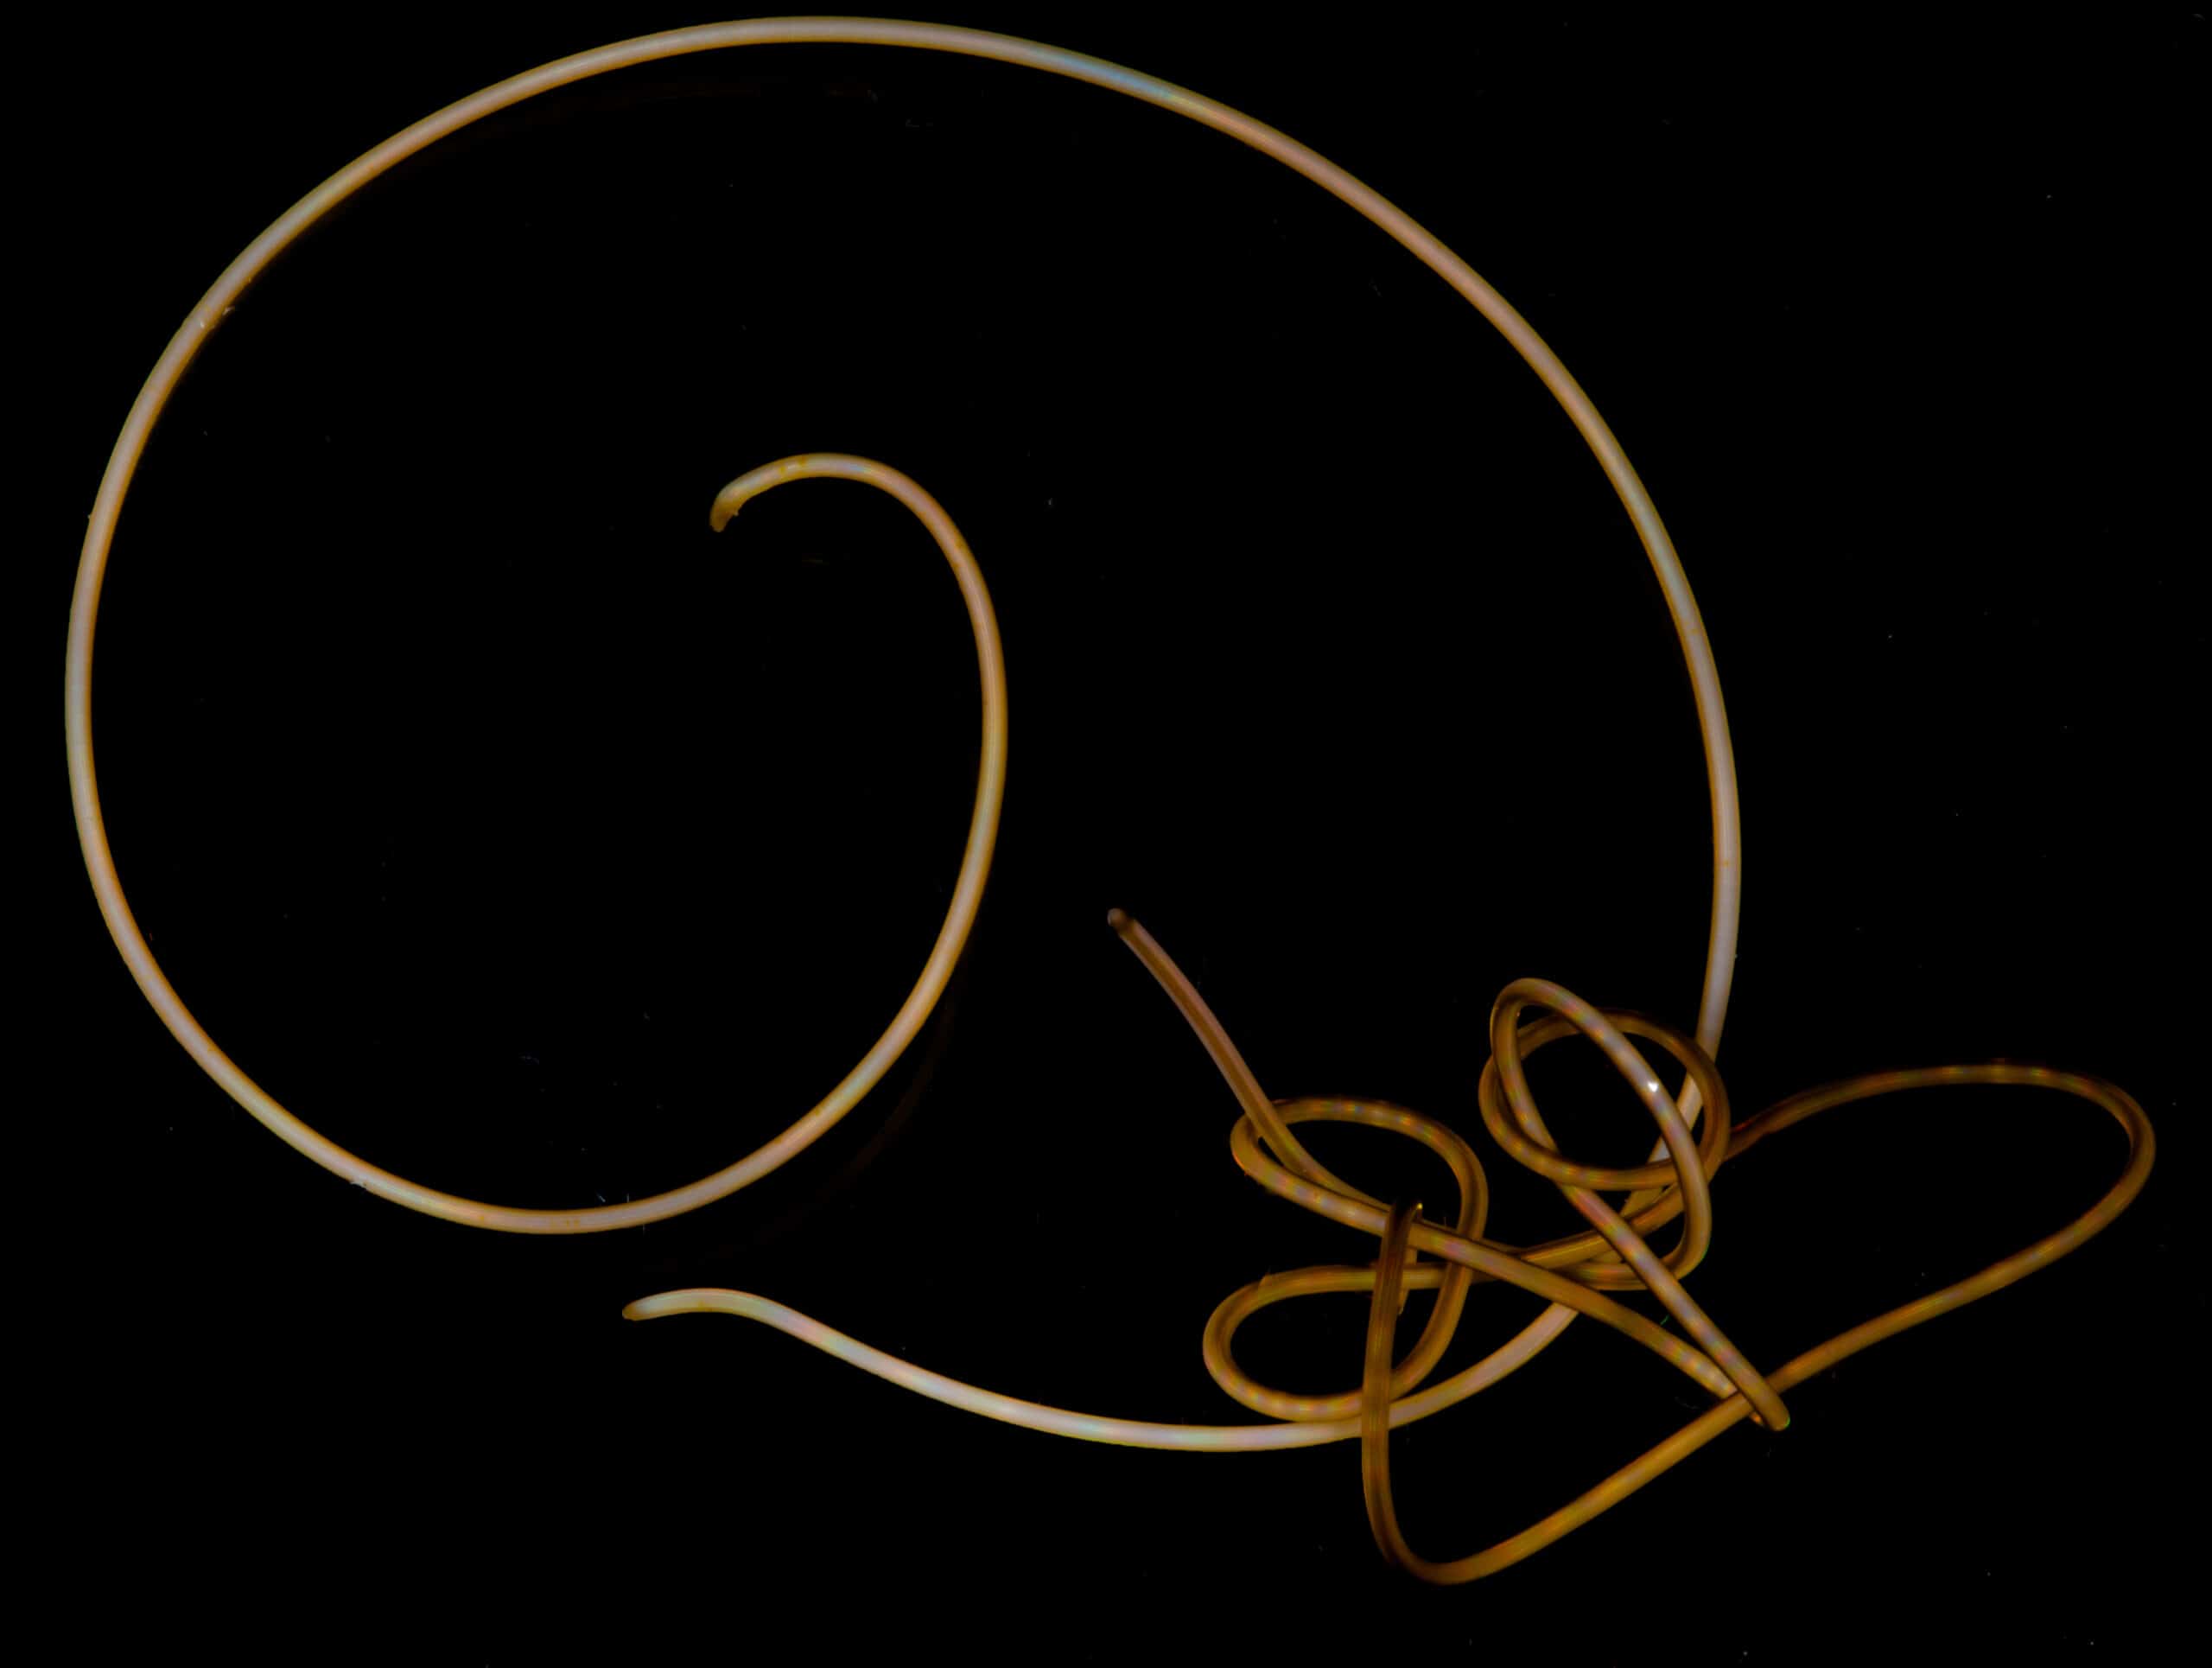 Hairworm tanglerd